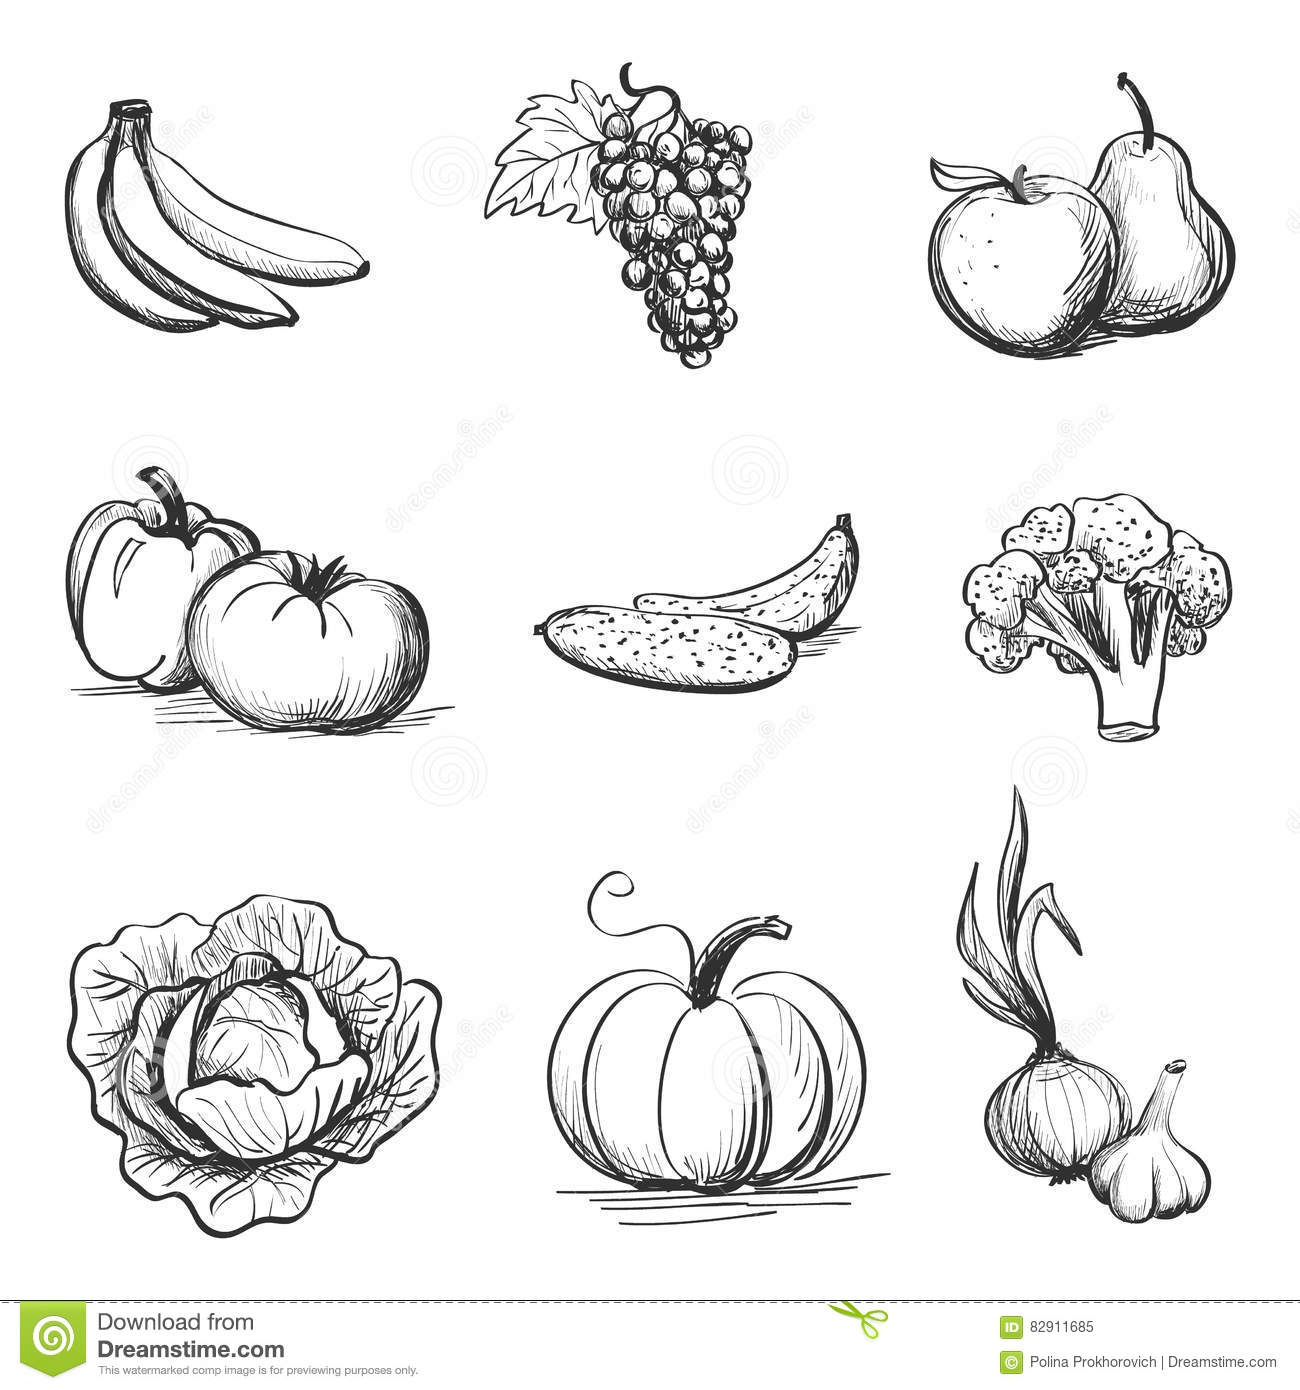 Эскизы фруктов и овощей